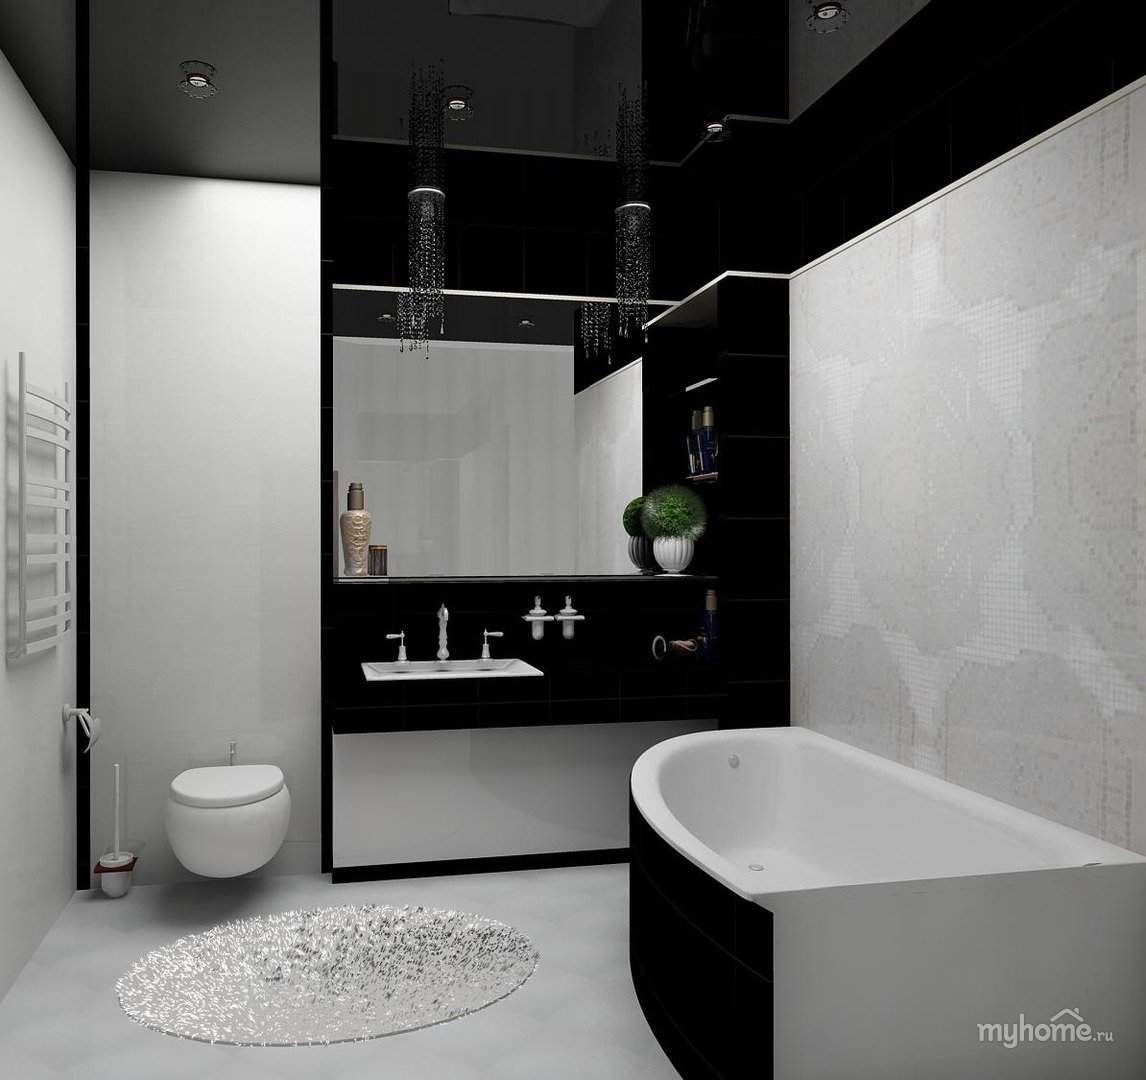 Ванная черная угловая. Черно-белая ванная комната. Черно белая ванная. Ванная комната в черно белом стиле. Интерьер ванной комнаты в черно белых тонах.